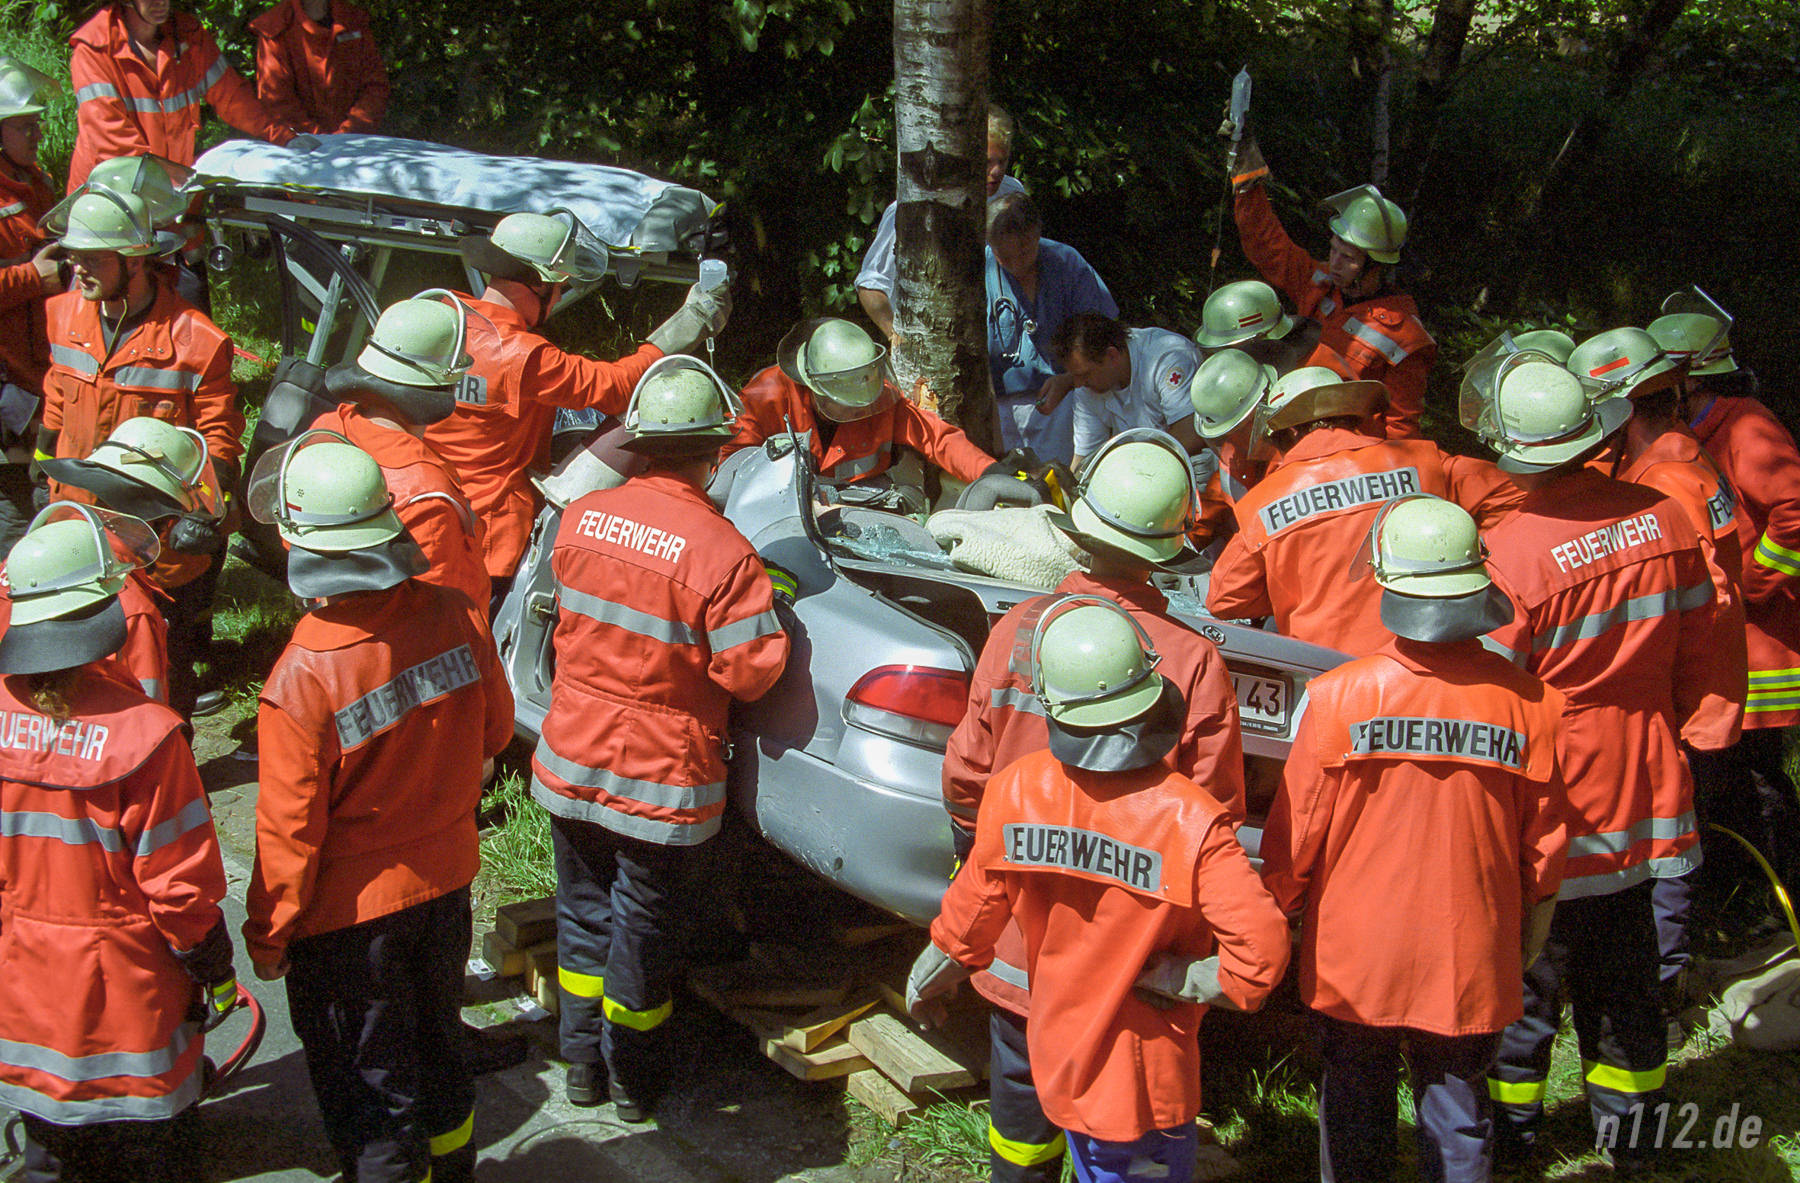 Viele Helfer am Auto: Rettungsarbeiten um das Jahr 1999 herum im Landkreis Harburg (vom Negativ gescannt) (Foto: n112.de/Stefan Hillen)